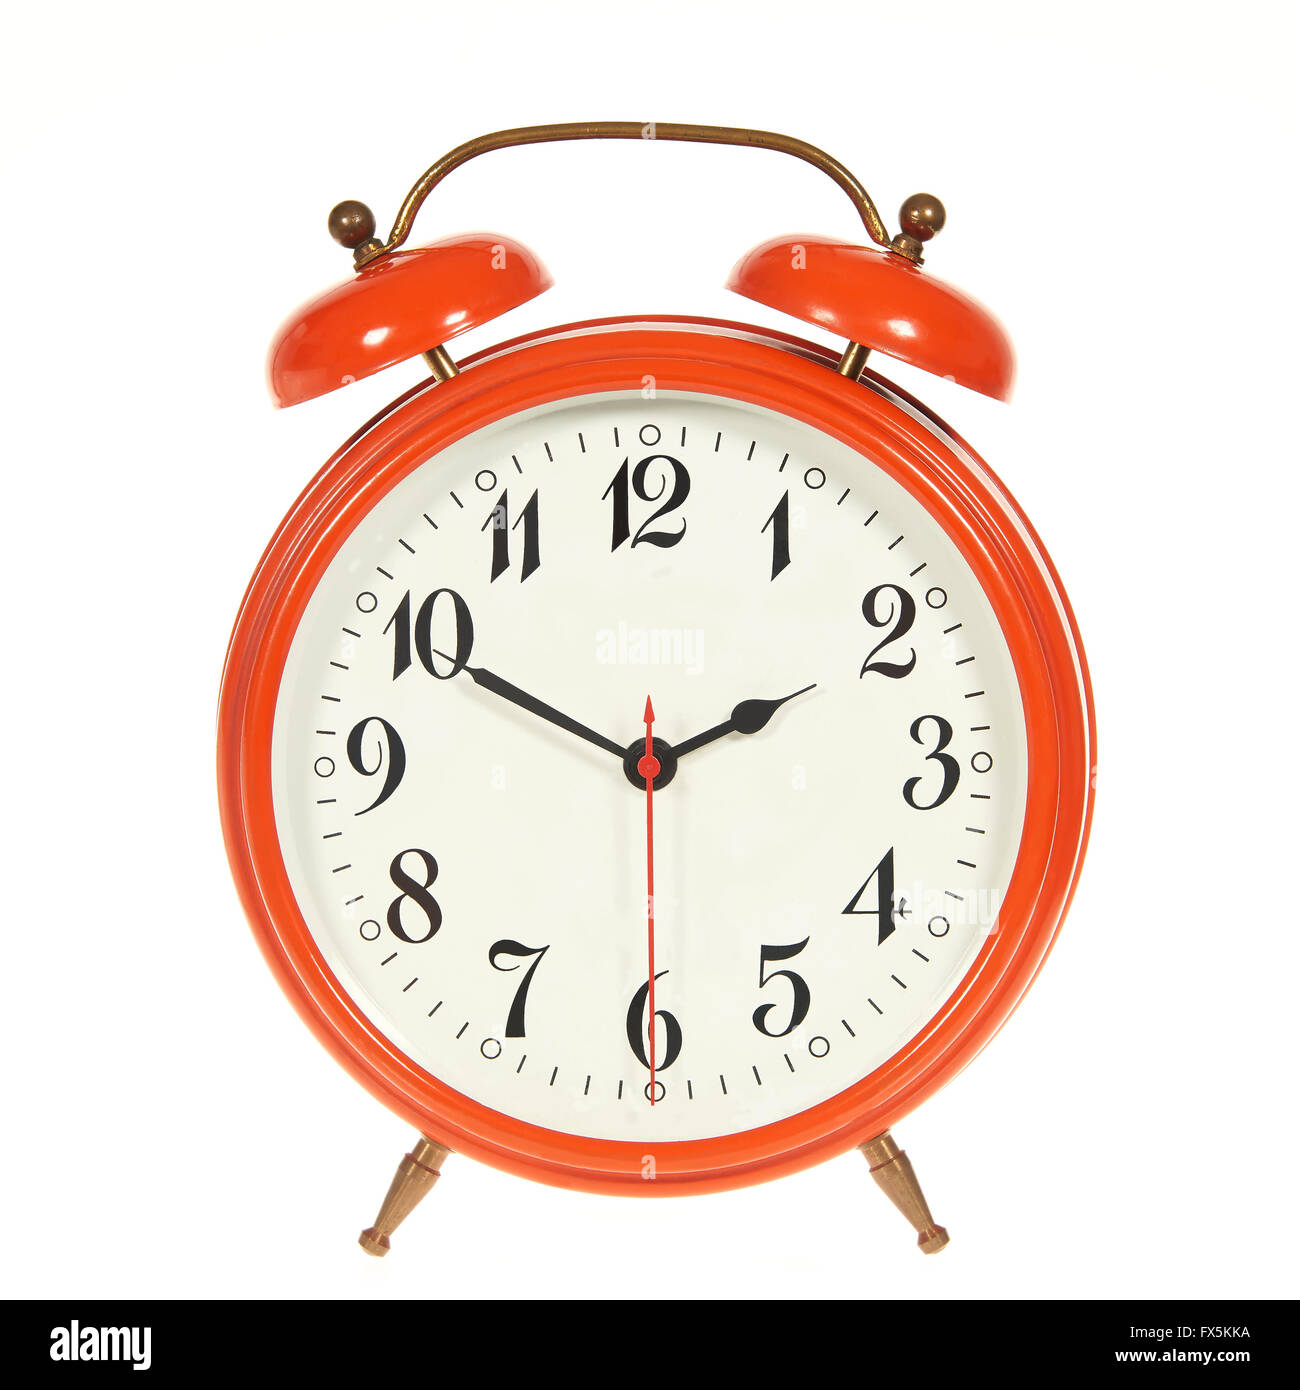 Orange alarm clock isolated on a white background Stock Photo